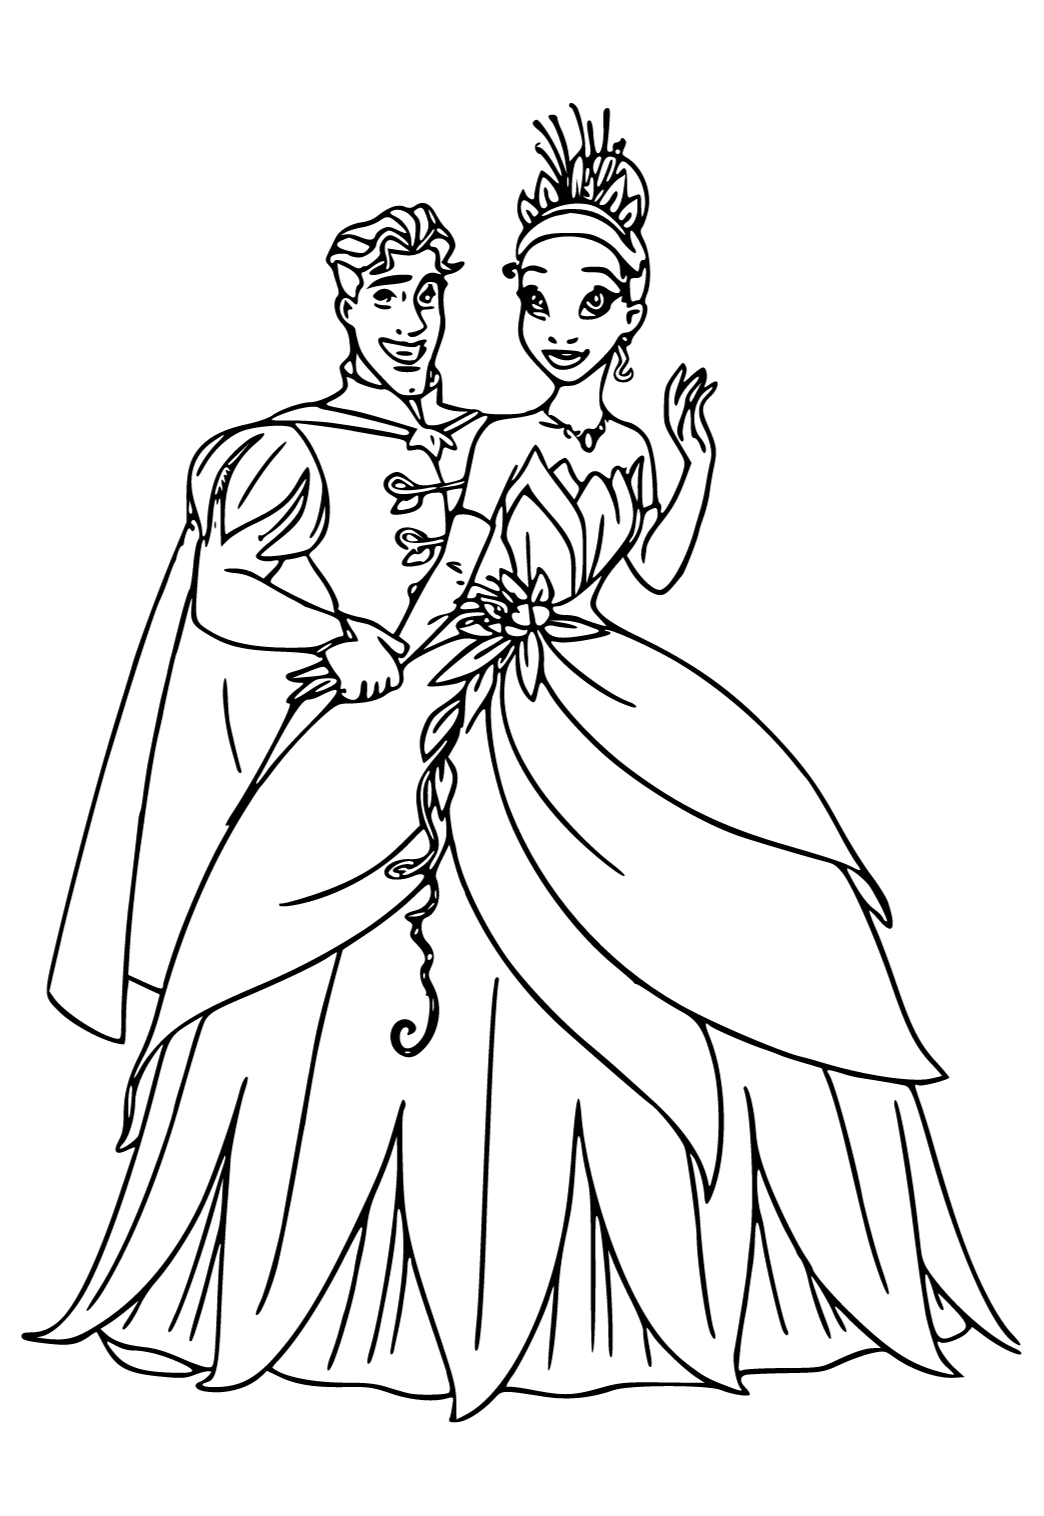 Раскраска Принц и принцесса распечатать - Стар против сил зла